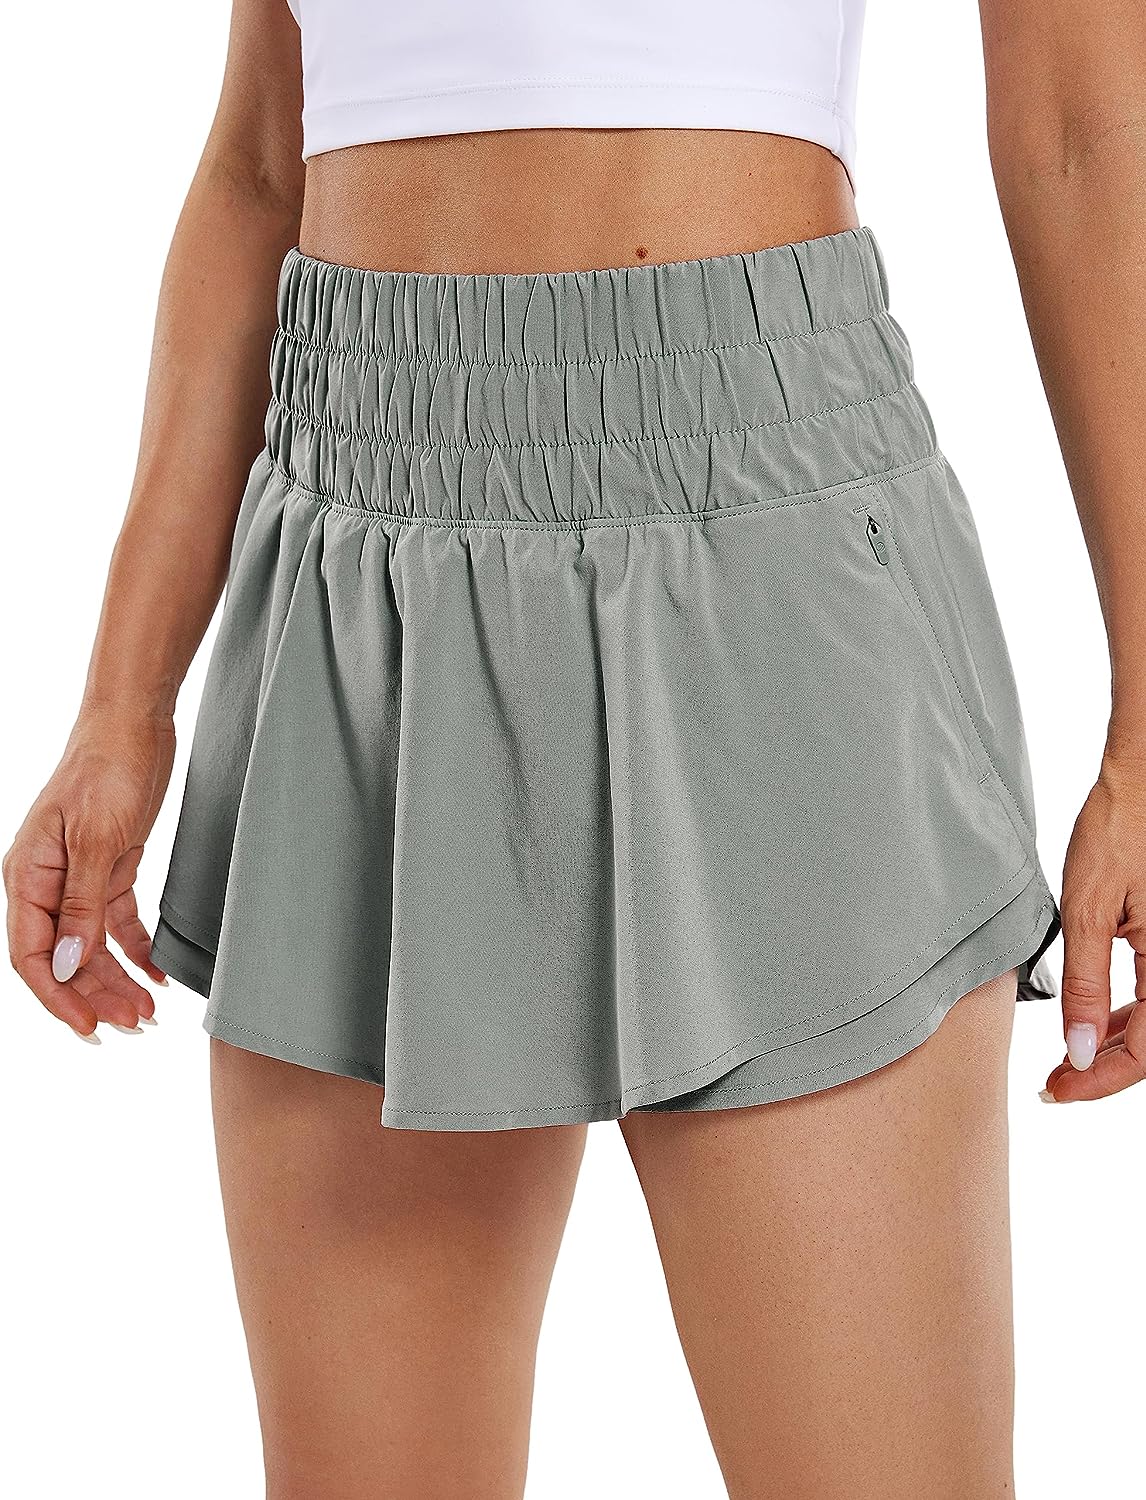 Shorts & Skirts – CRZ YOGA